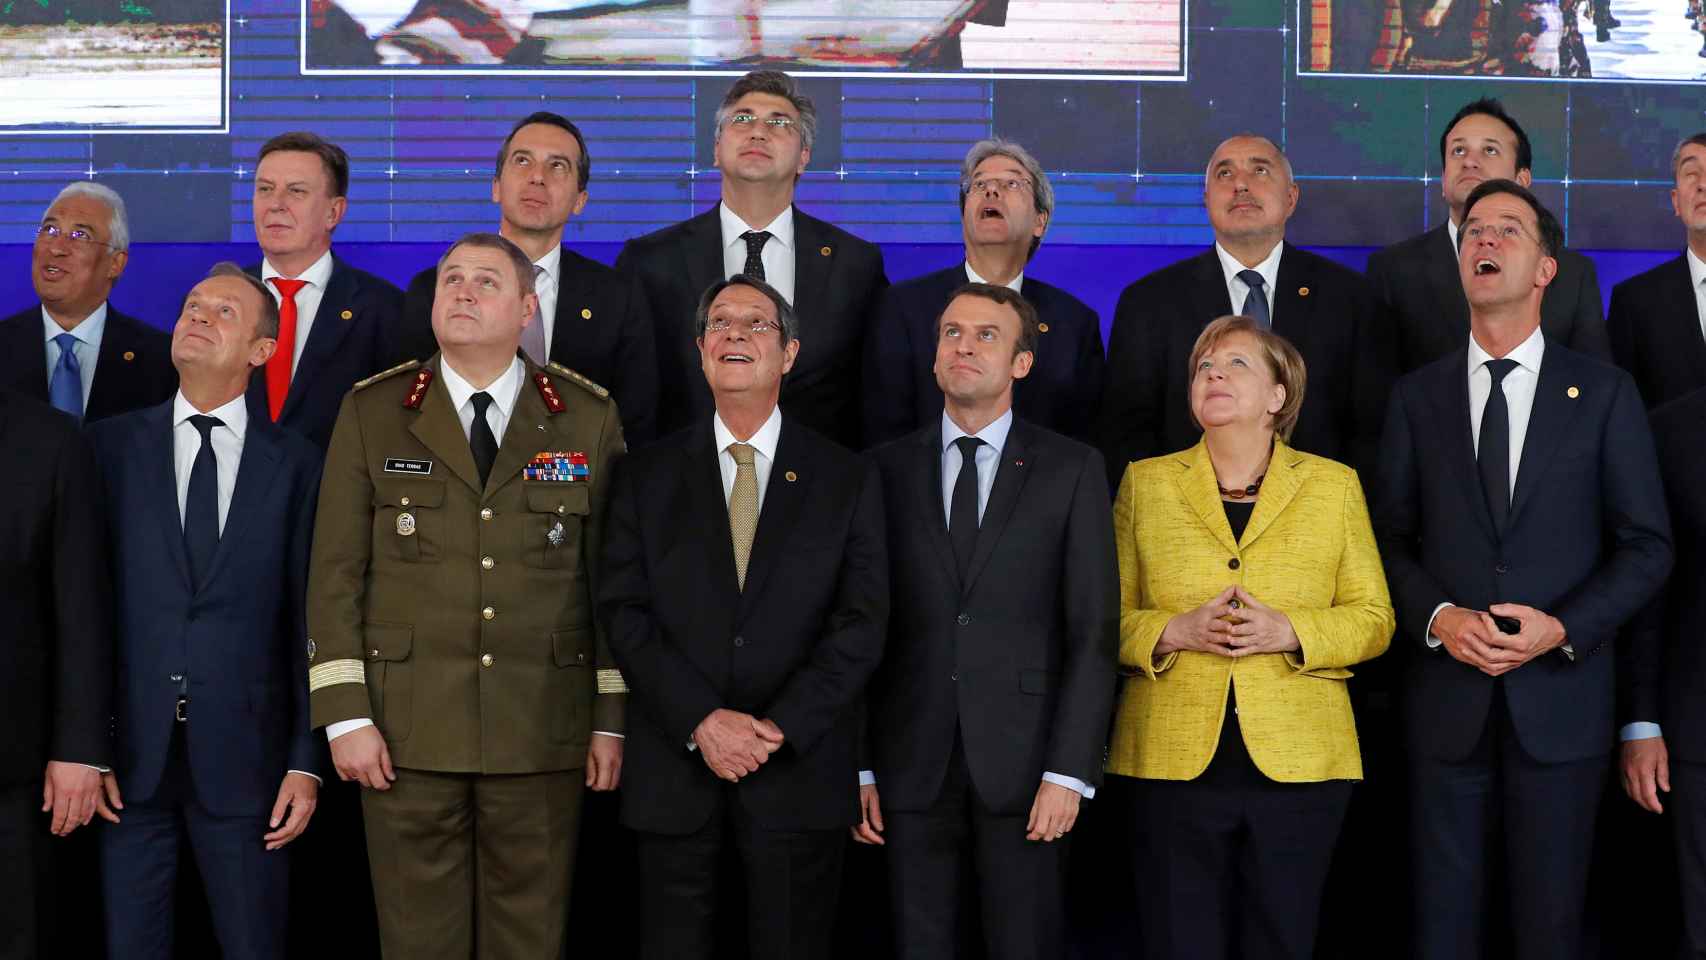 La foto de familia de los líderes europeos durante el lanzamiento de la PESCO